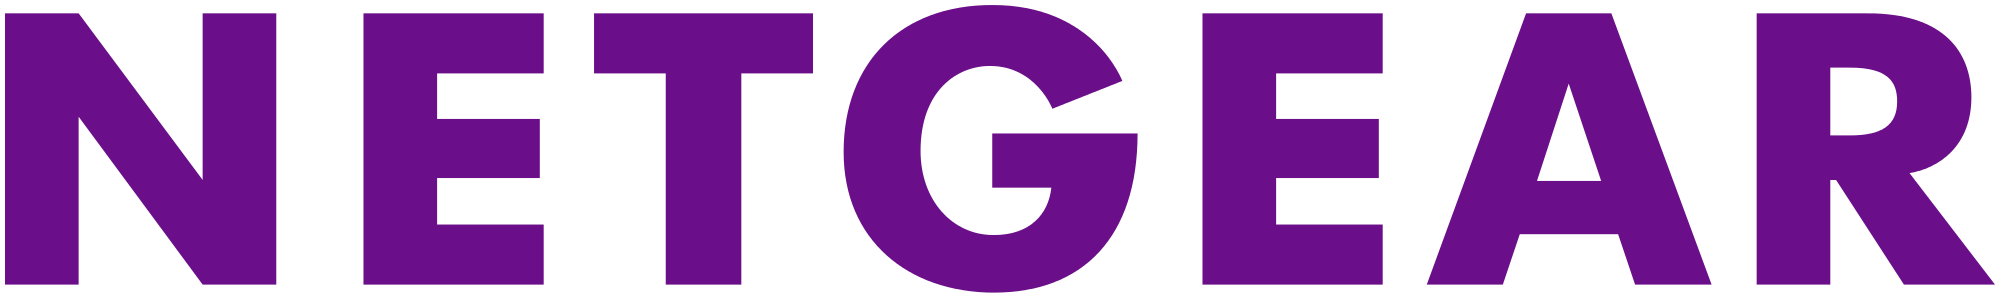 Imagini pentru netgear logo